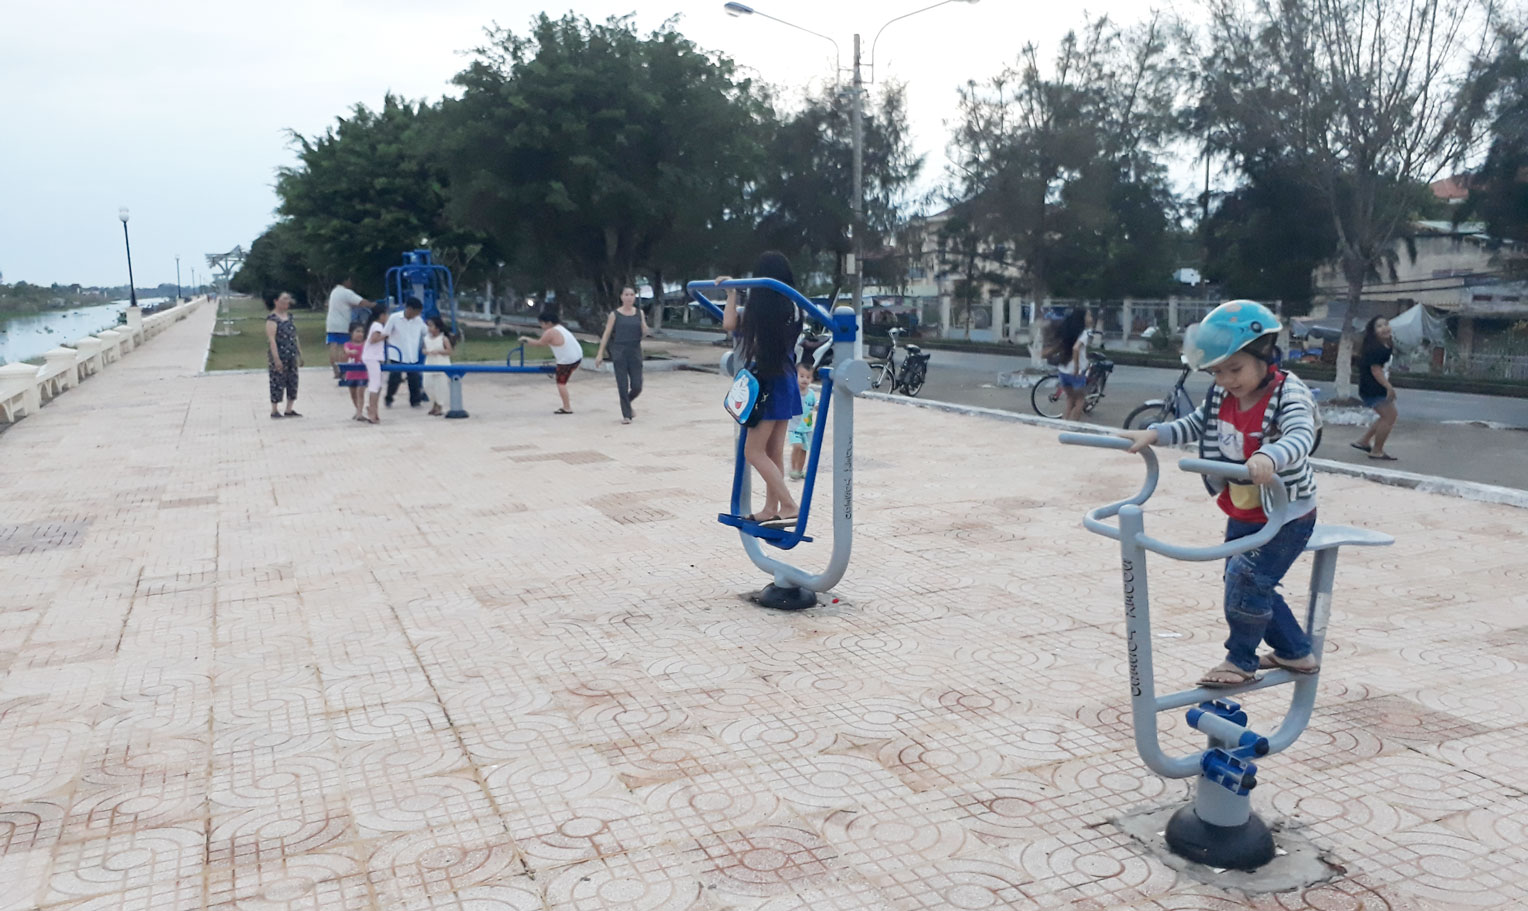 Công viên thị trấn là nơi người dân đến vui chơi, luyện tập thể dục - thể thao